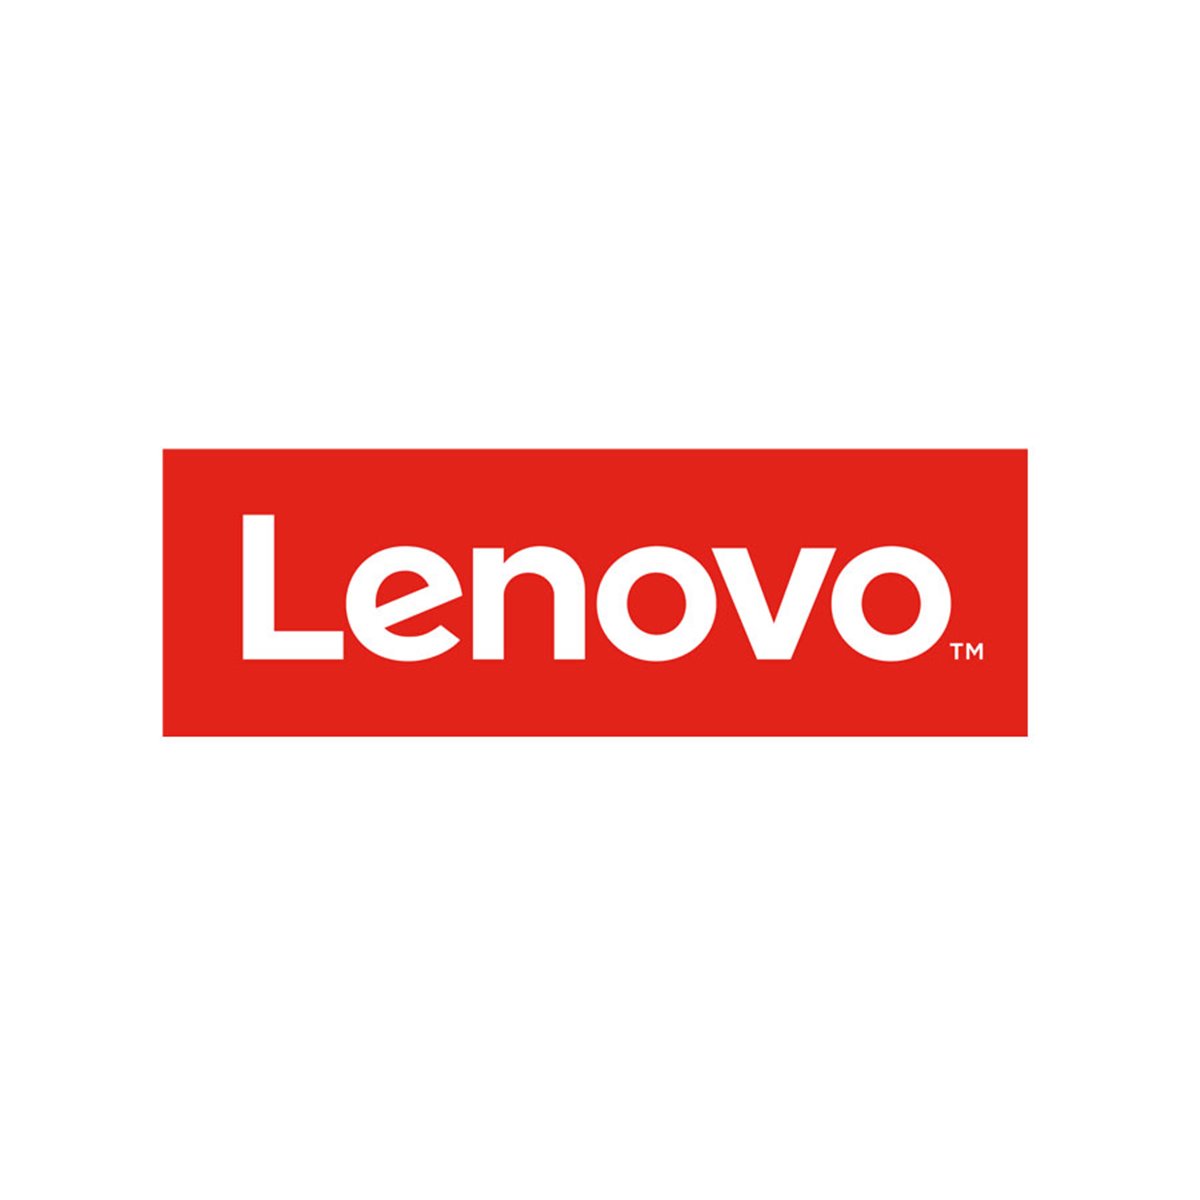 Lenovo Storwize Family for V5000 External Virtualizati on